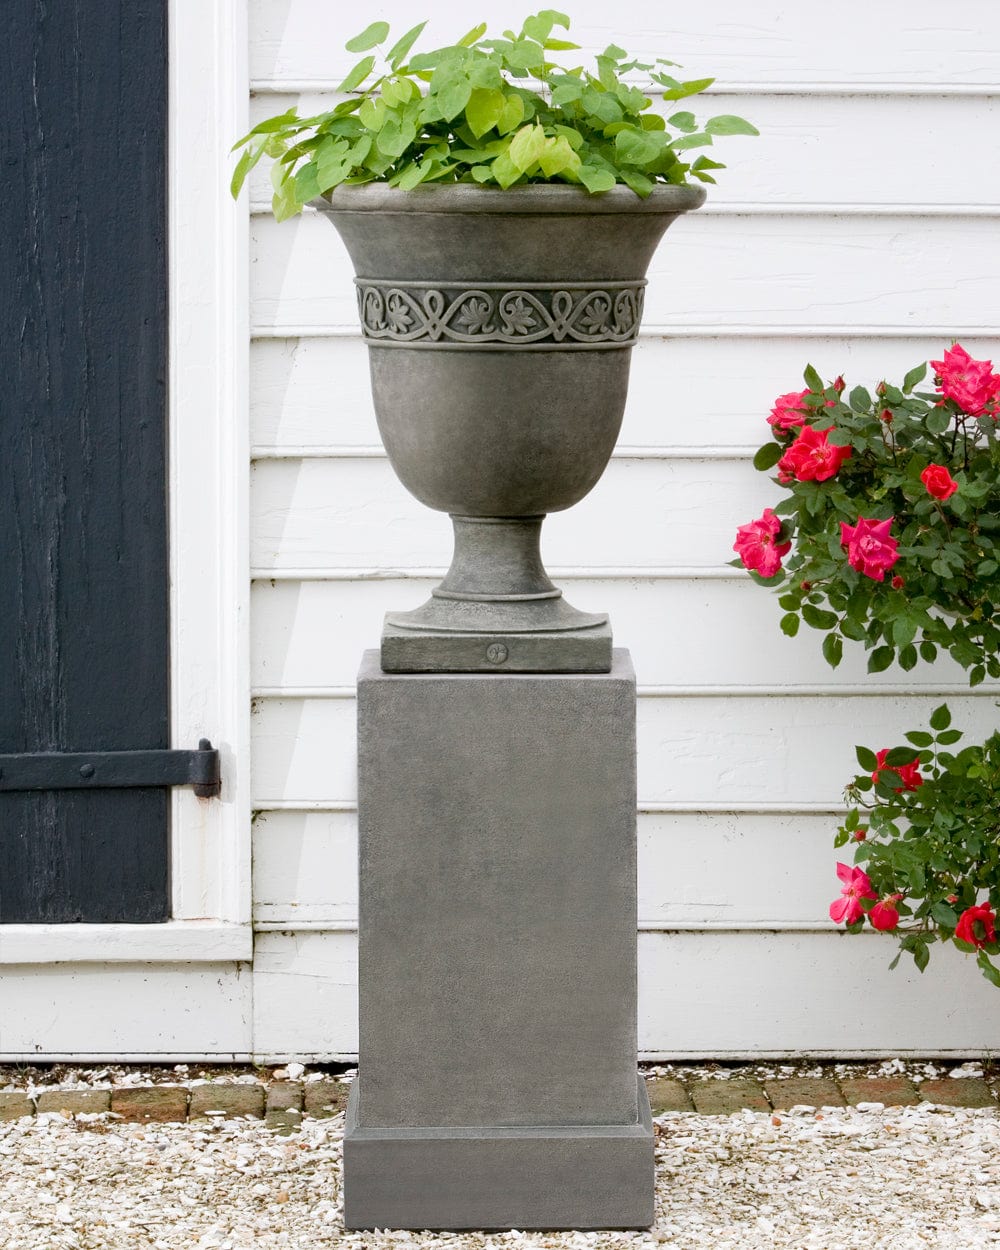 Williamsburg Strapwork Leaf Urn Garden Planter on Classic Tall Garden Pedestal - Outdoor Art Pros